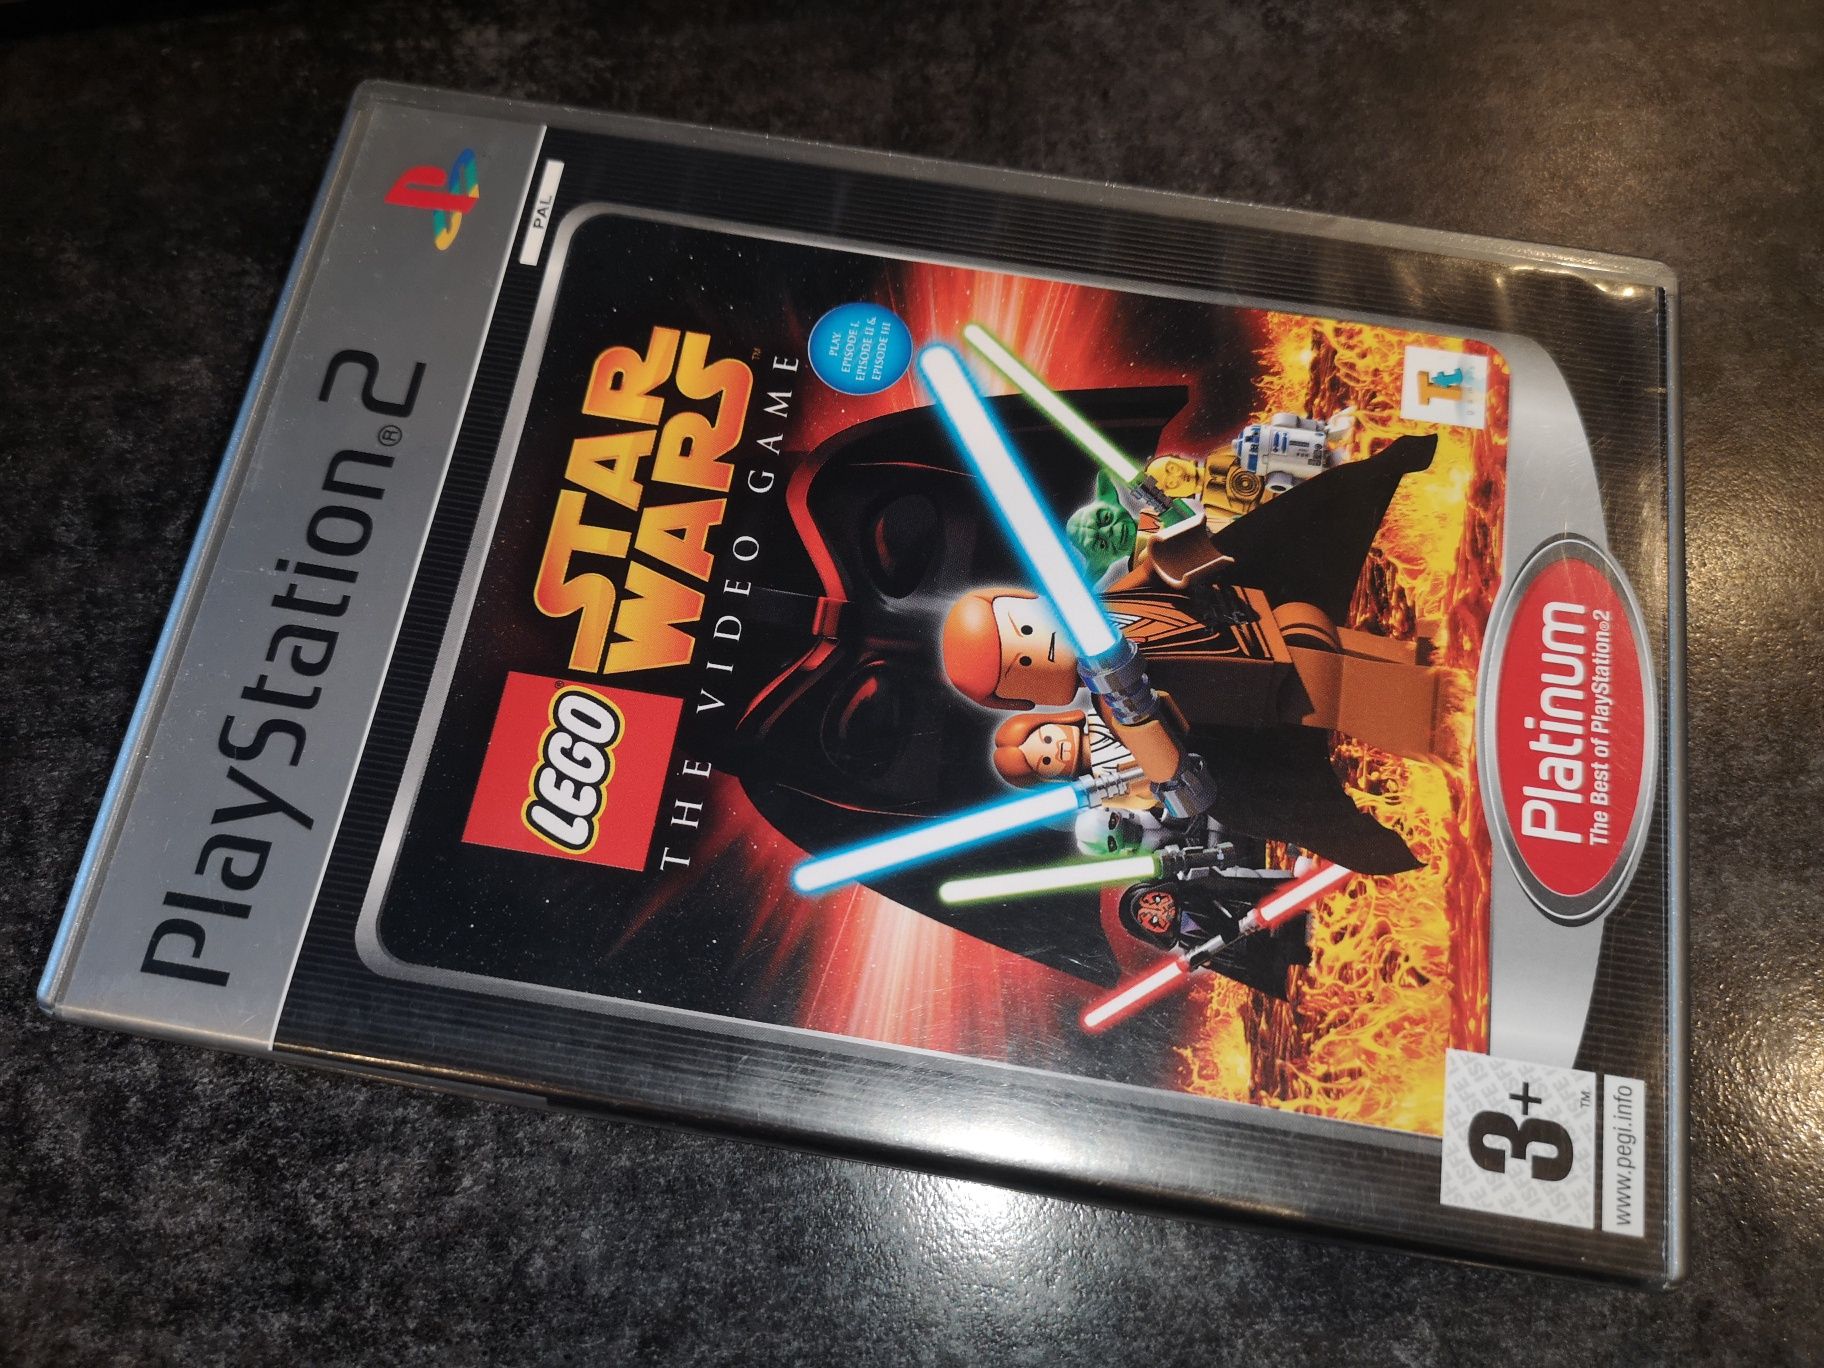 Lego Star Wars PS2 gra ANG (stan bdb) kioskzgrami Ursus